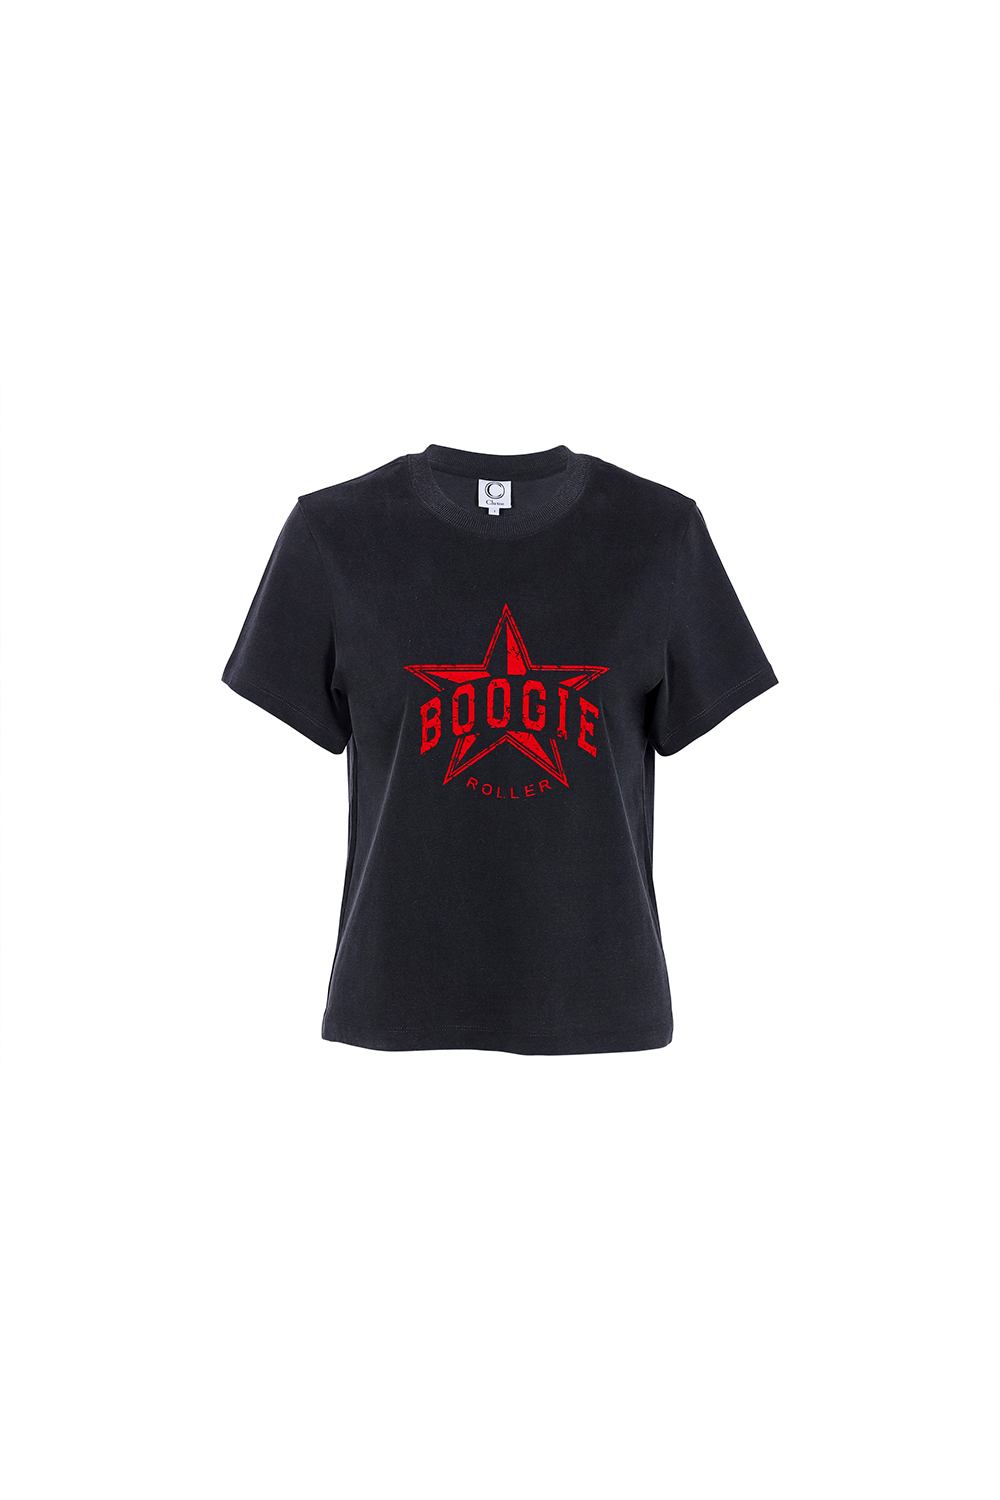 Boogie T-shirt_black